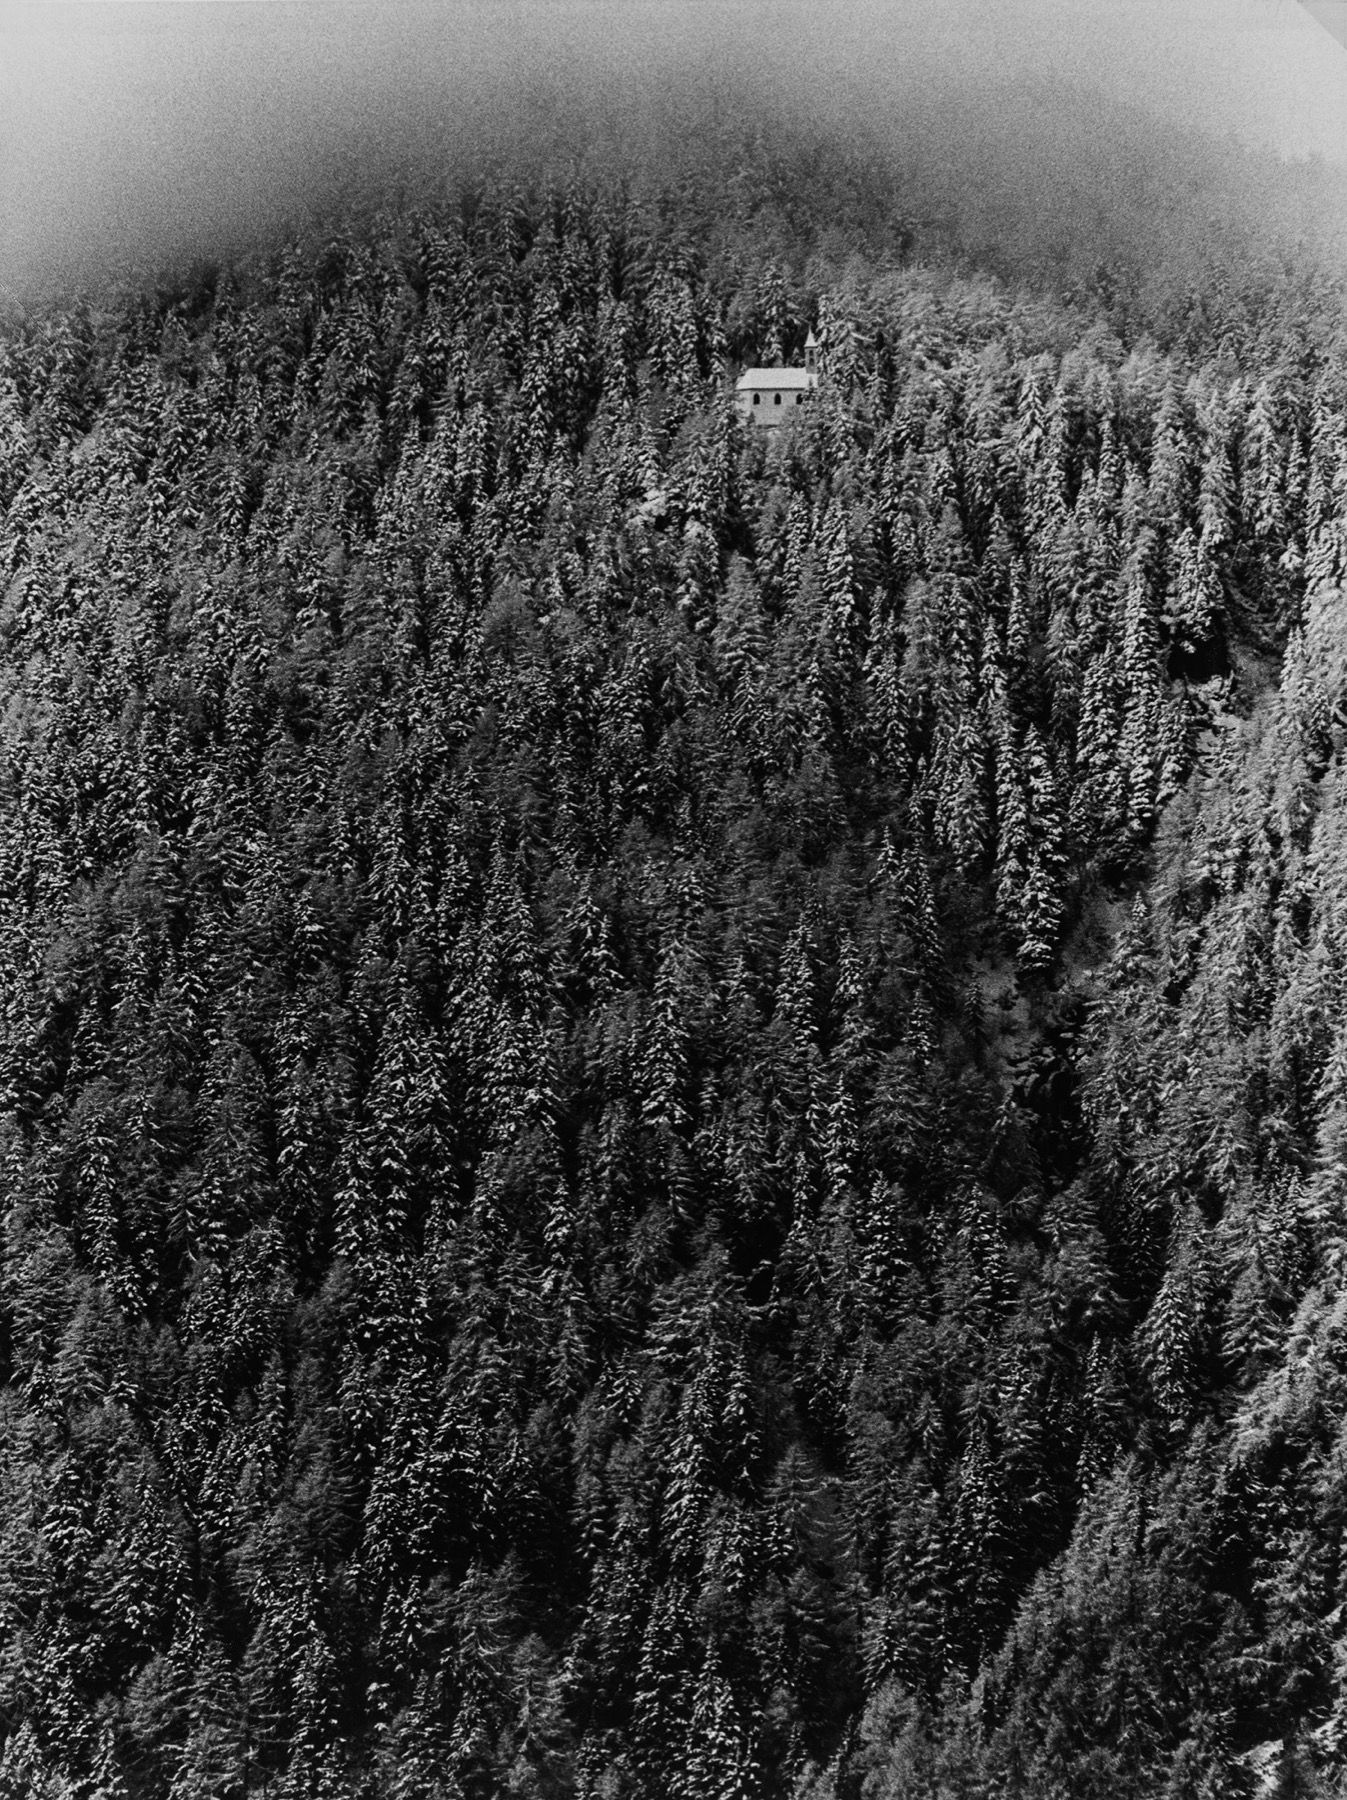 Mario De Biasi Sans titre (Forêt de pins), années 1970

Tirage gélatino-argentiq&hellip;